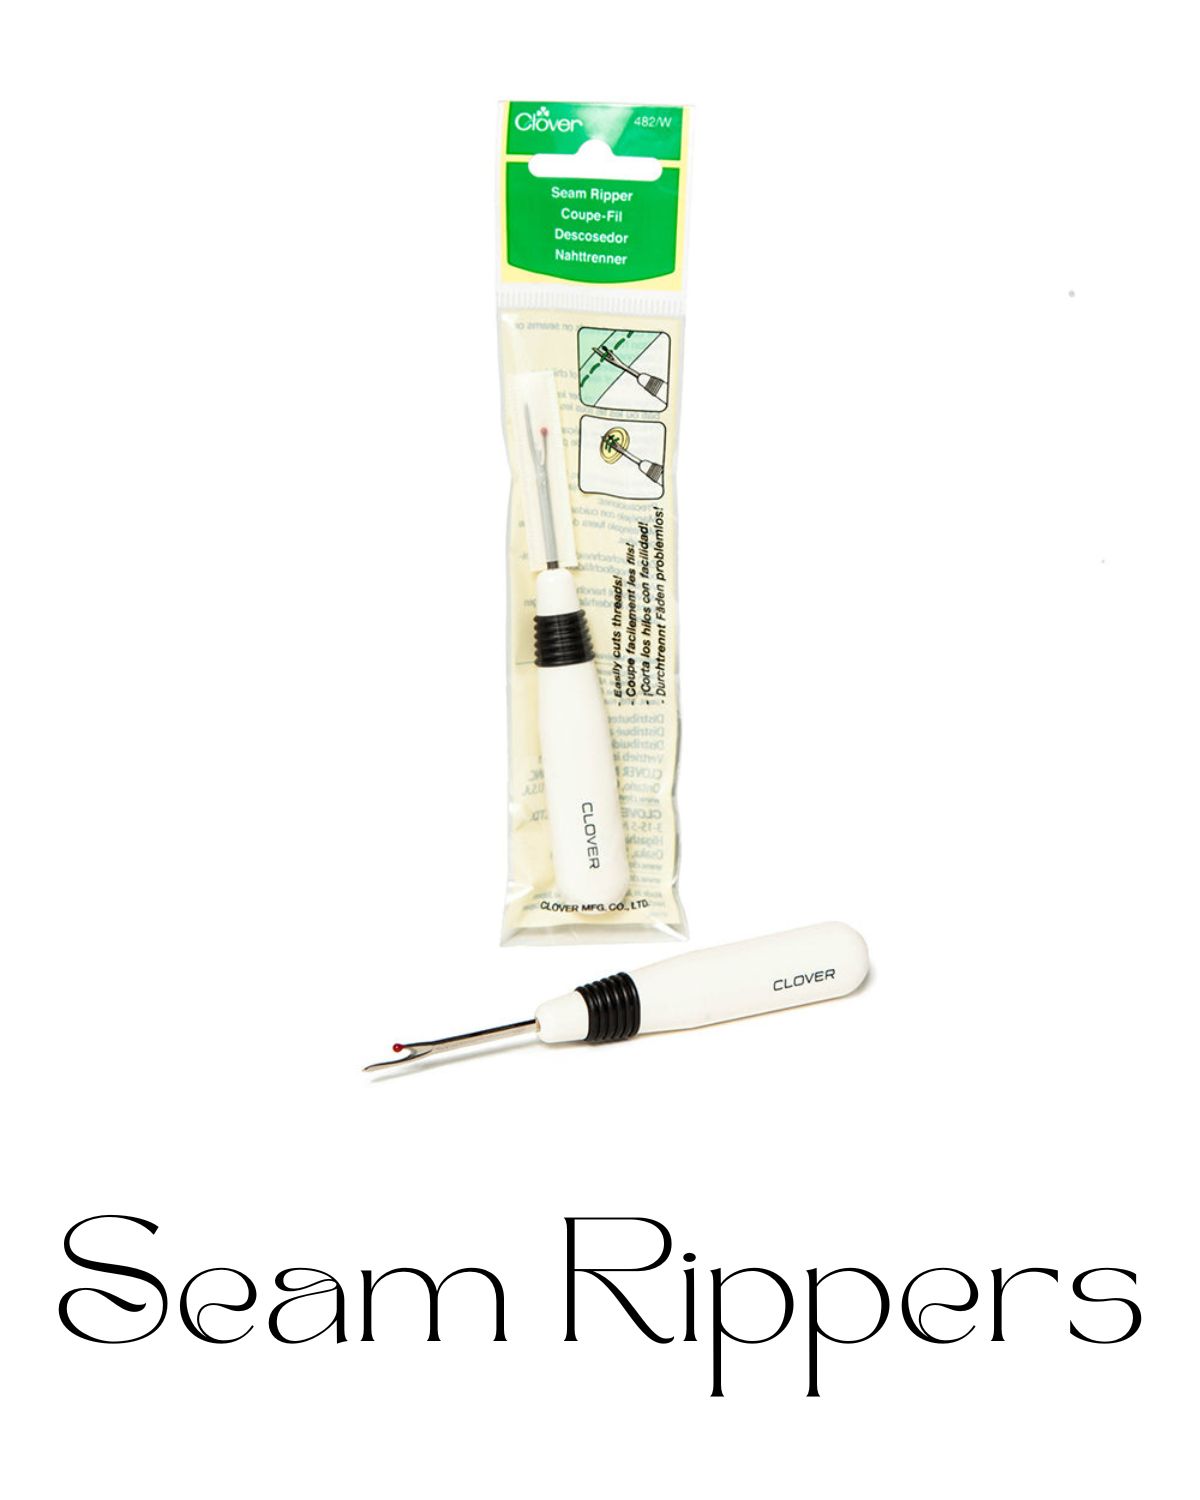 A seam ripper